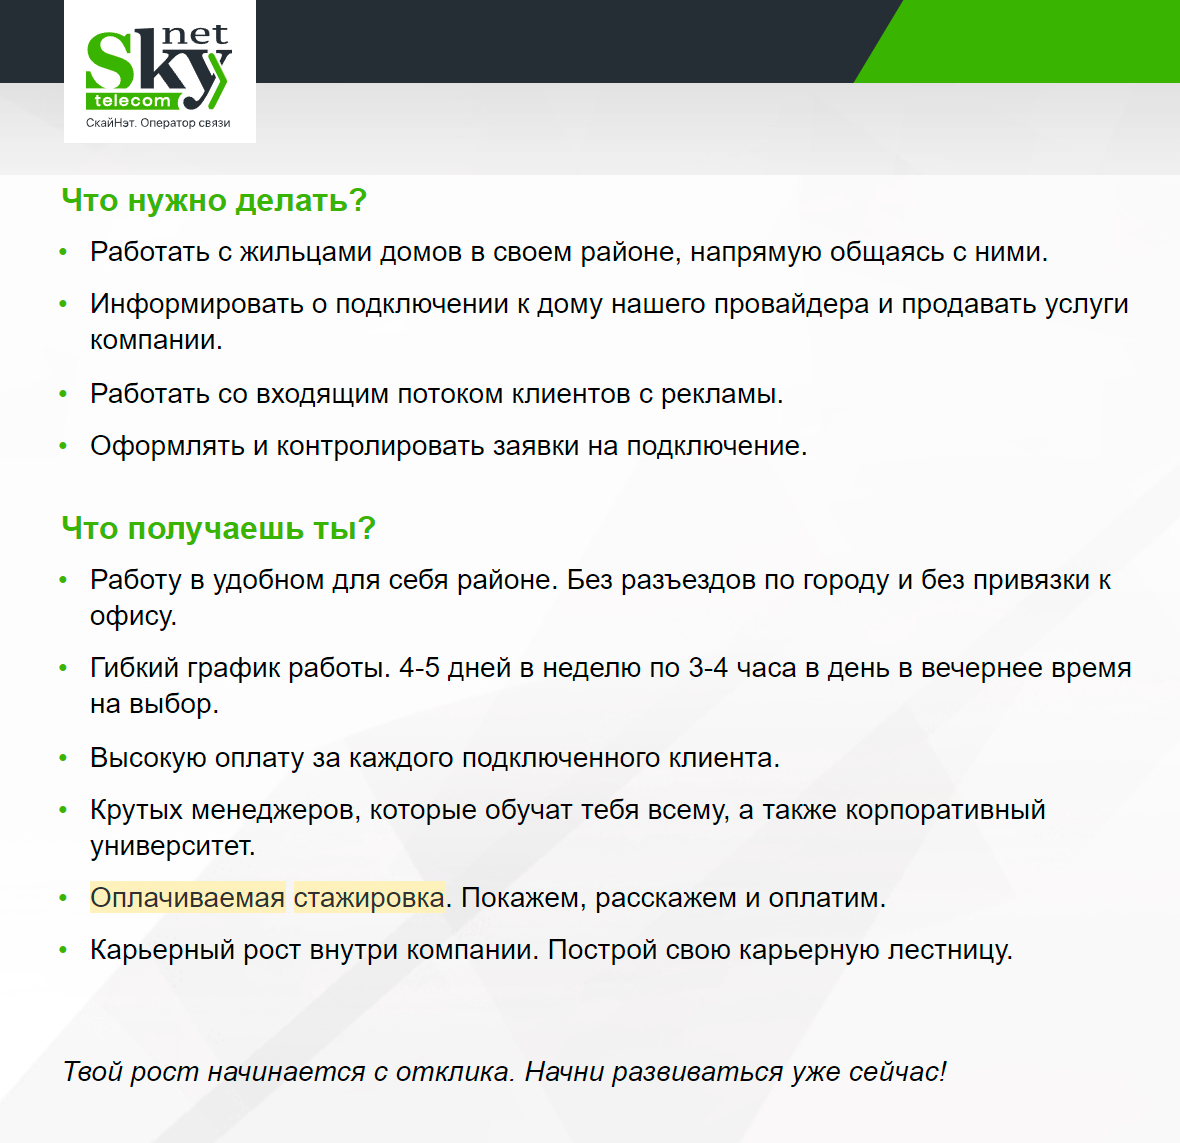 Например, в компании SkyNet ищут начинающих специалистов по подключению услуг связи. График гибкий, а стажировка оплачивается